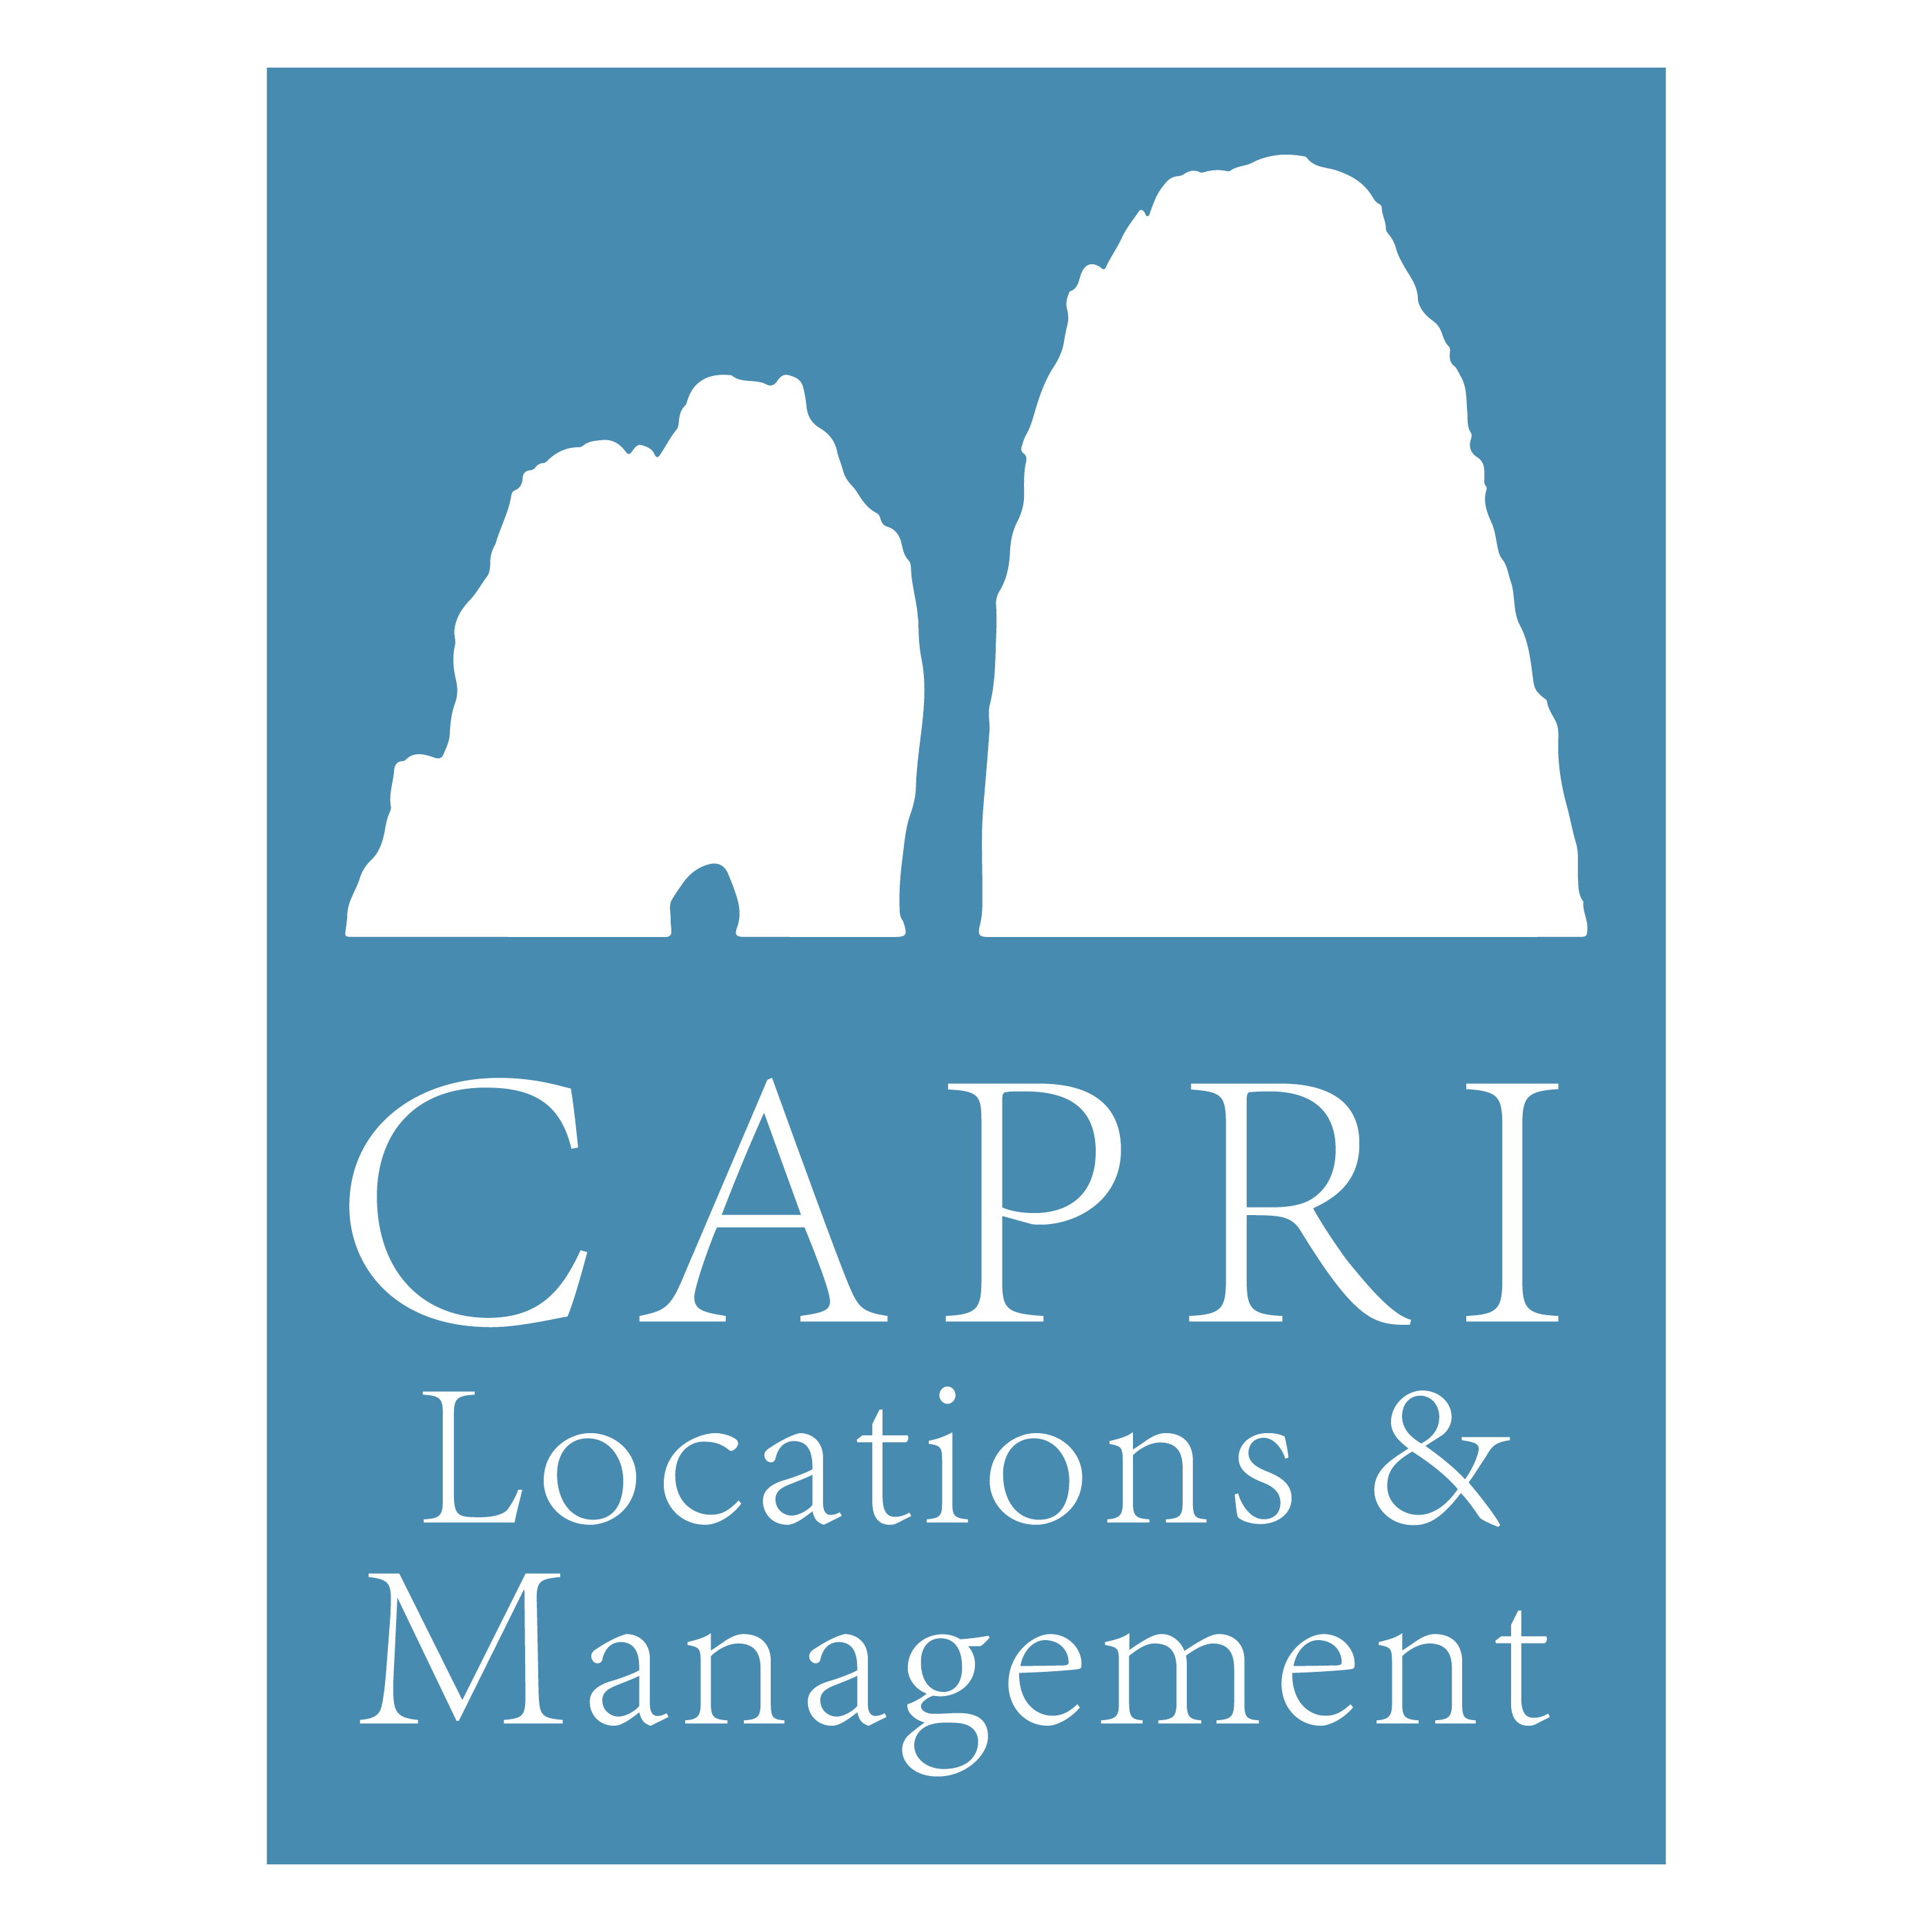 Capri Locations